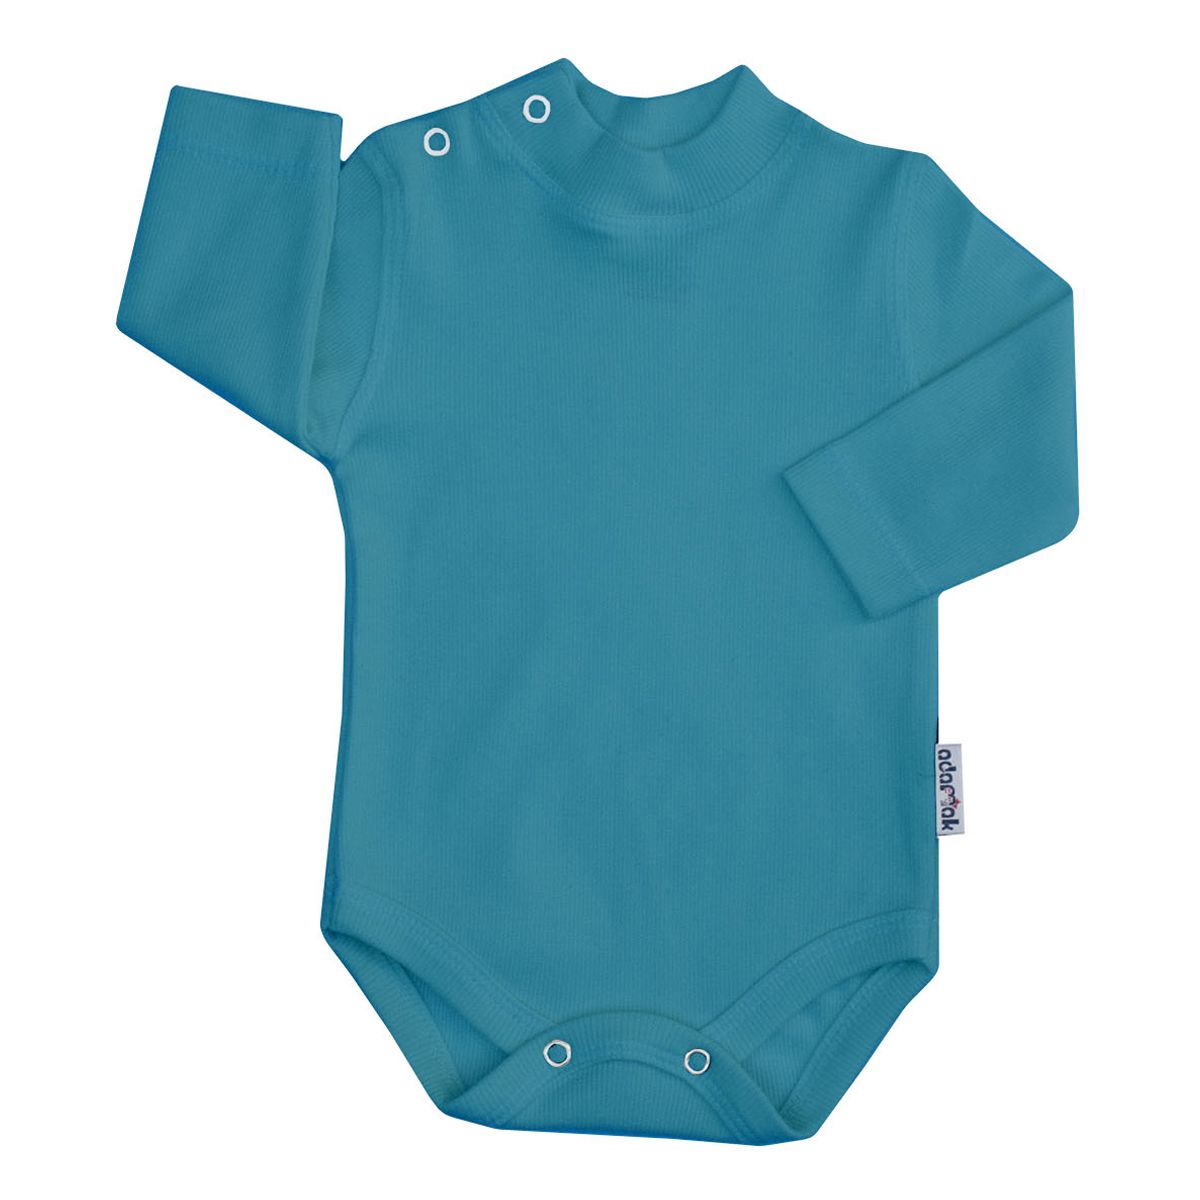 بادی آستین بلند نوزاد آدمک کد 176300 رنگ سبز آبی -  - 1